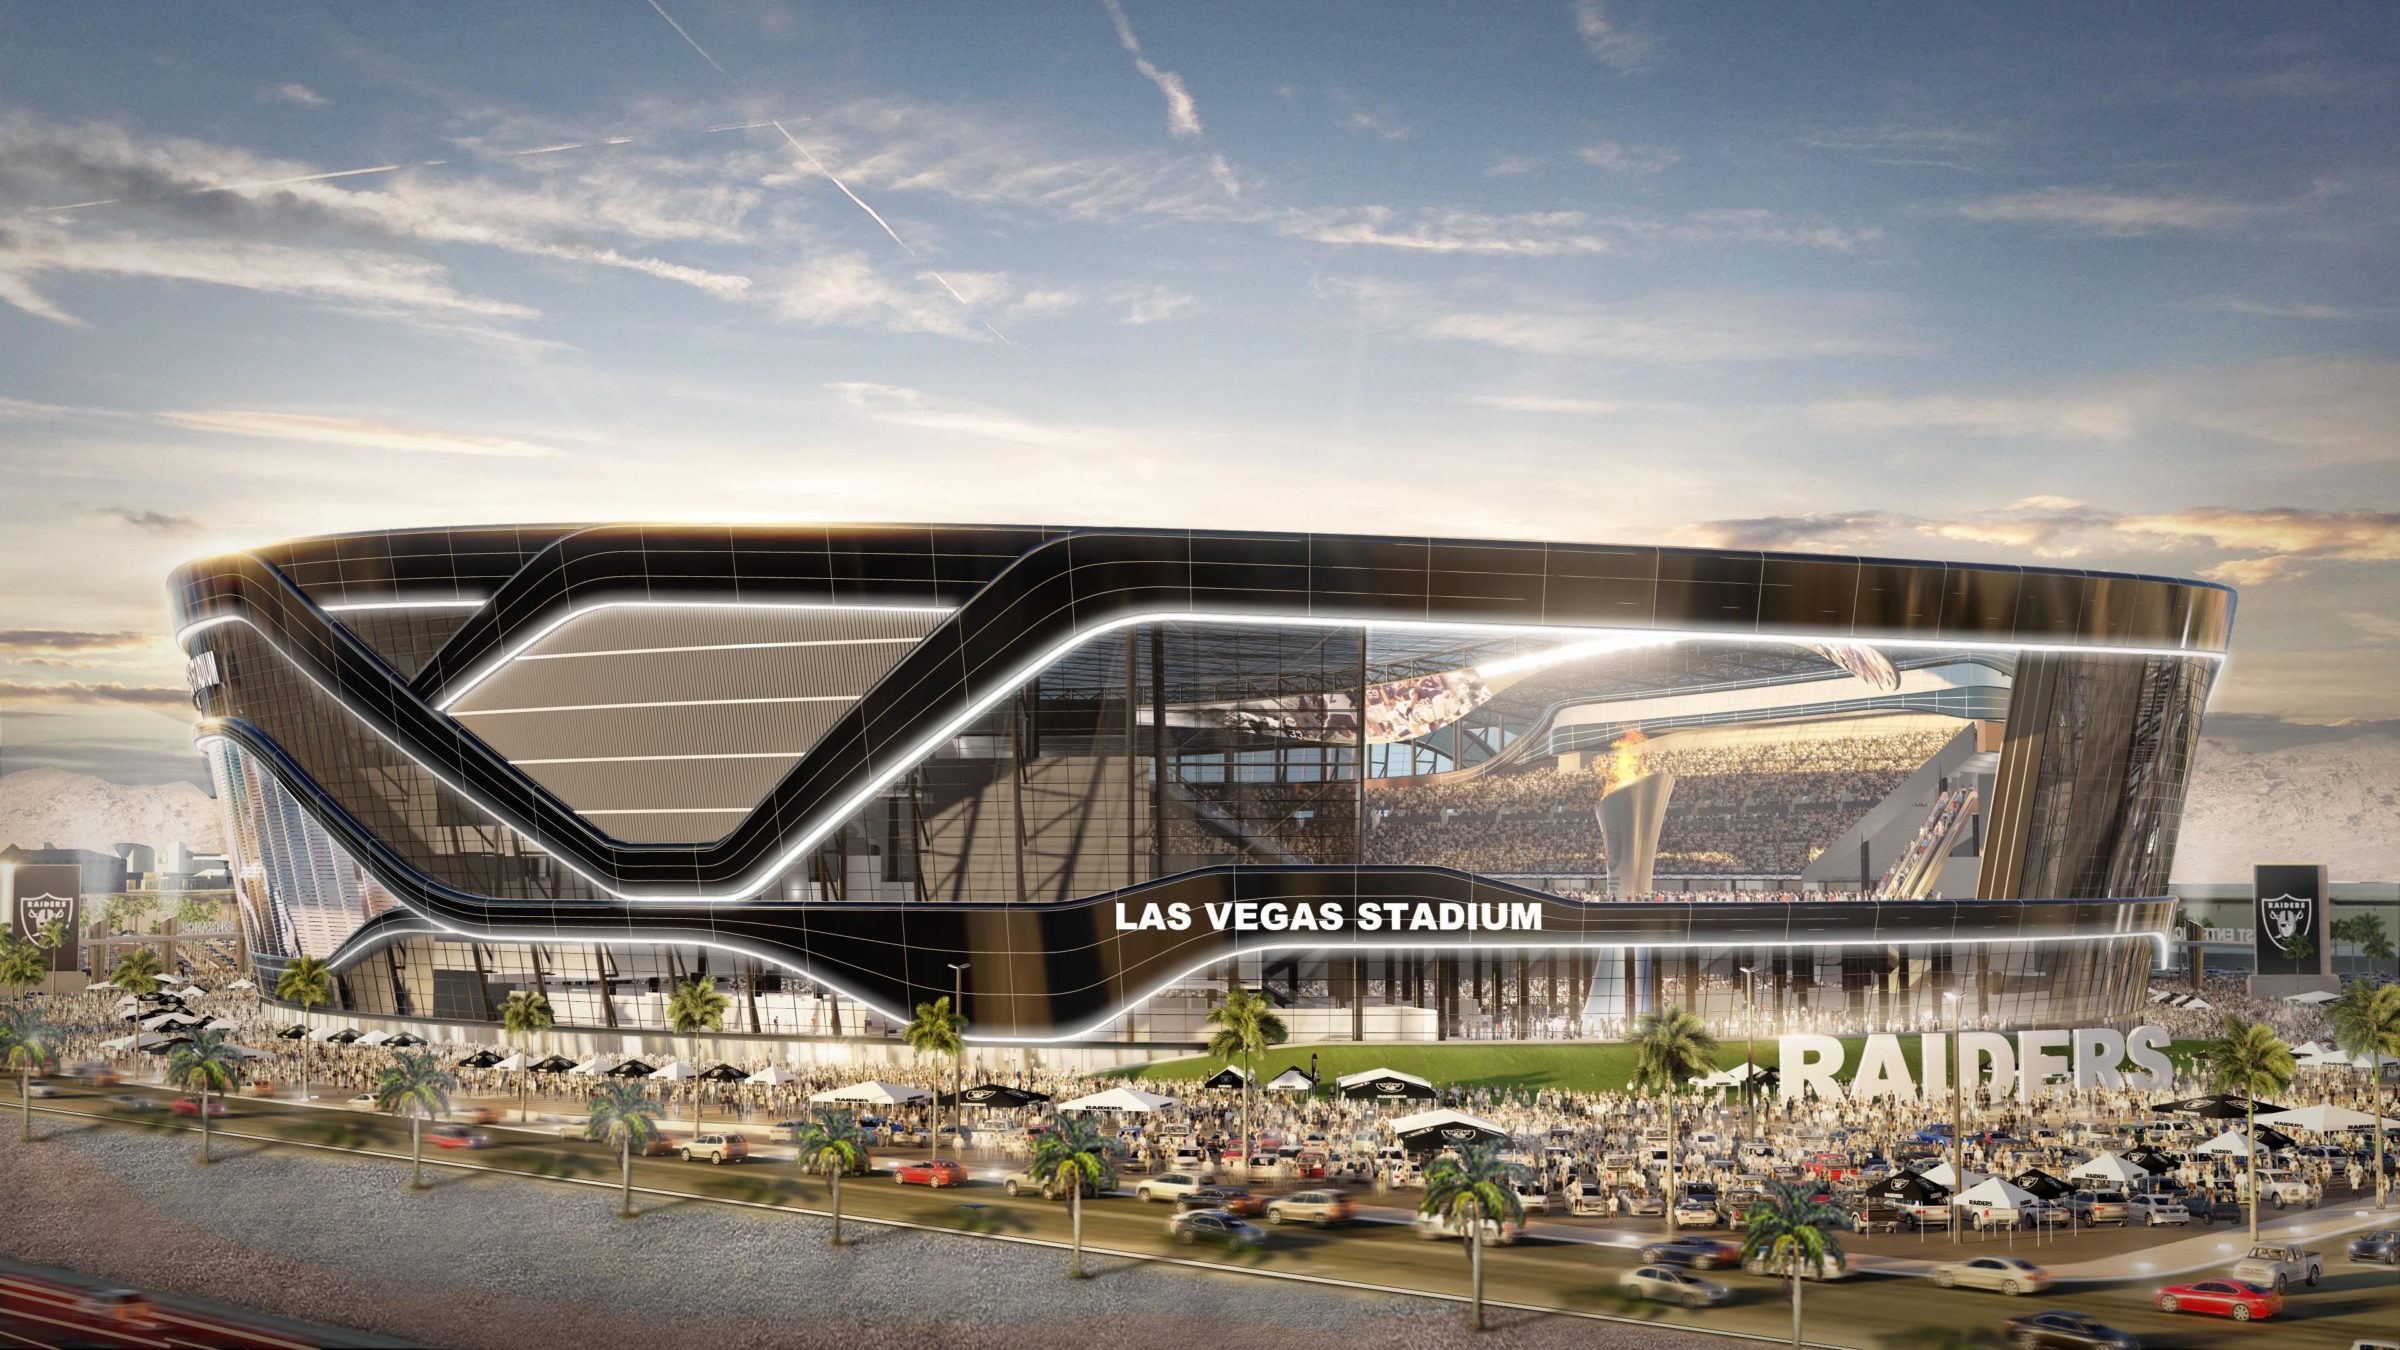 Las Vegas NFL Stadium Manica Architecture